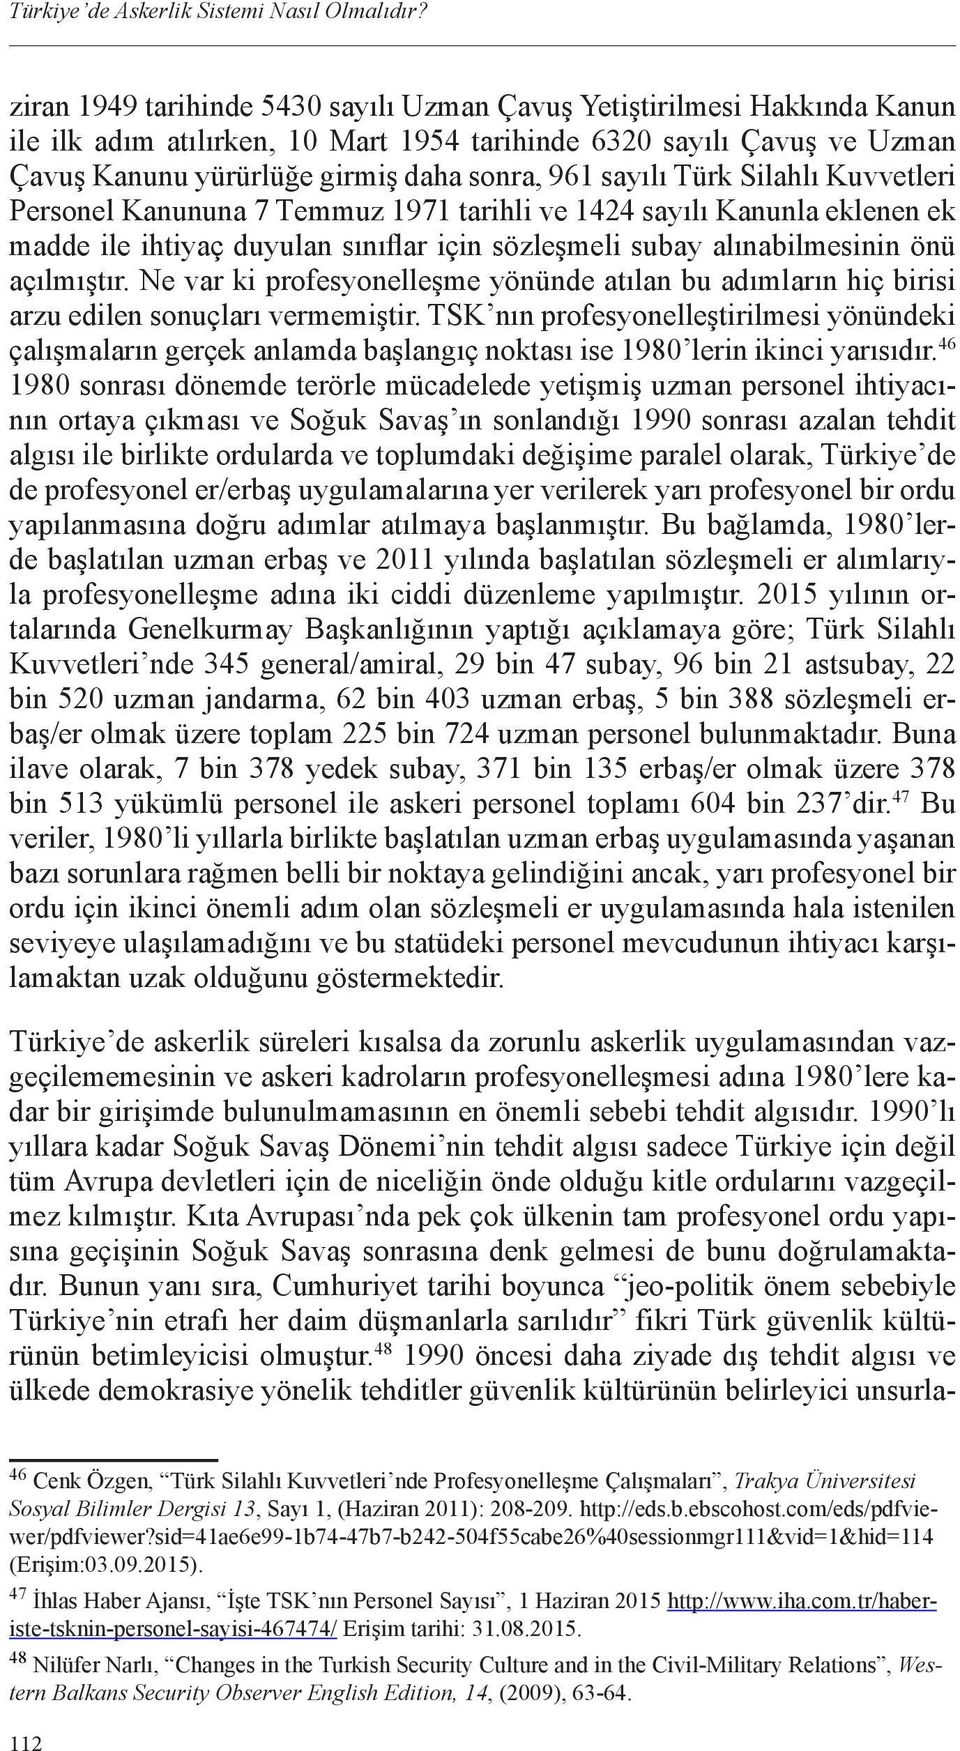 sayılı Türk Silahlı Kuvvetleri Personel Kanununa 7 Temmuz 1971 tarihli ve 1424 sayılı Kanunla eklenen ek madde ile ihtiyaç duyulan sınıflar için sözleşmeli subay alınabilmesinin önü açılmıştır.